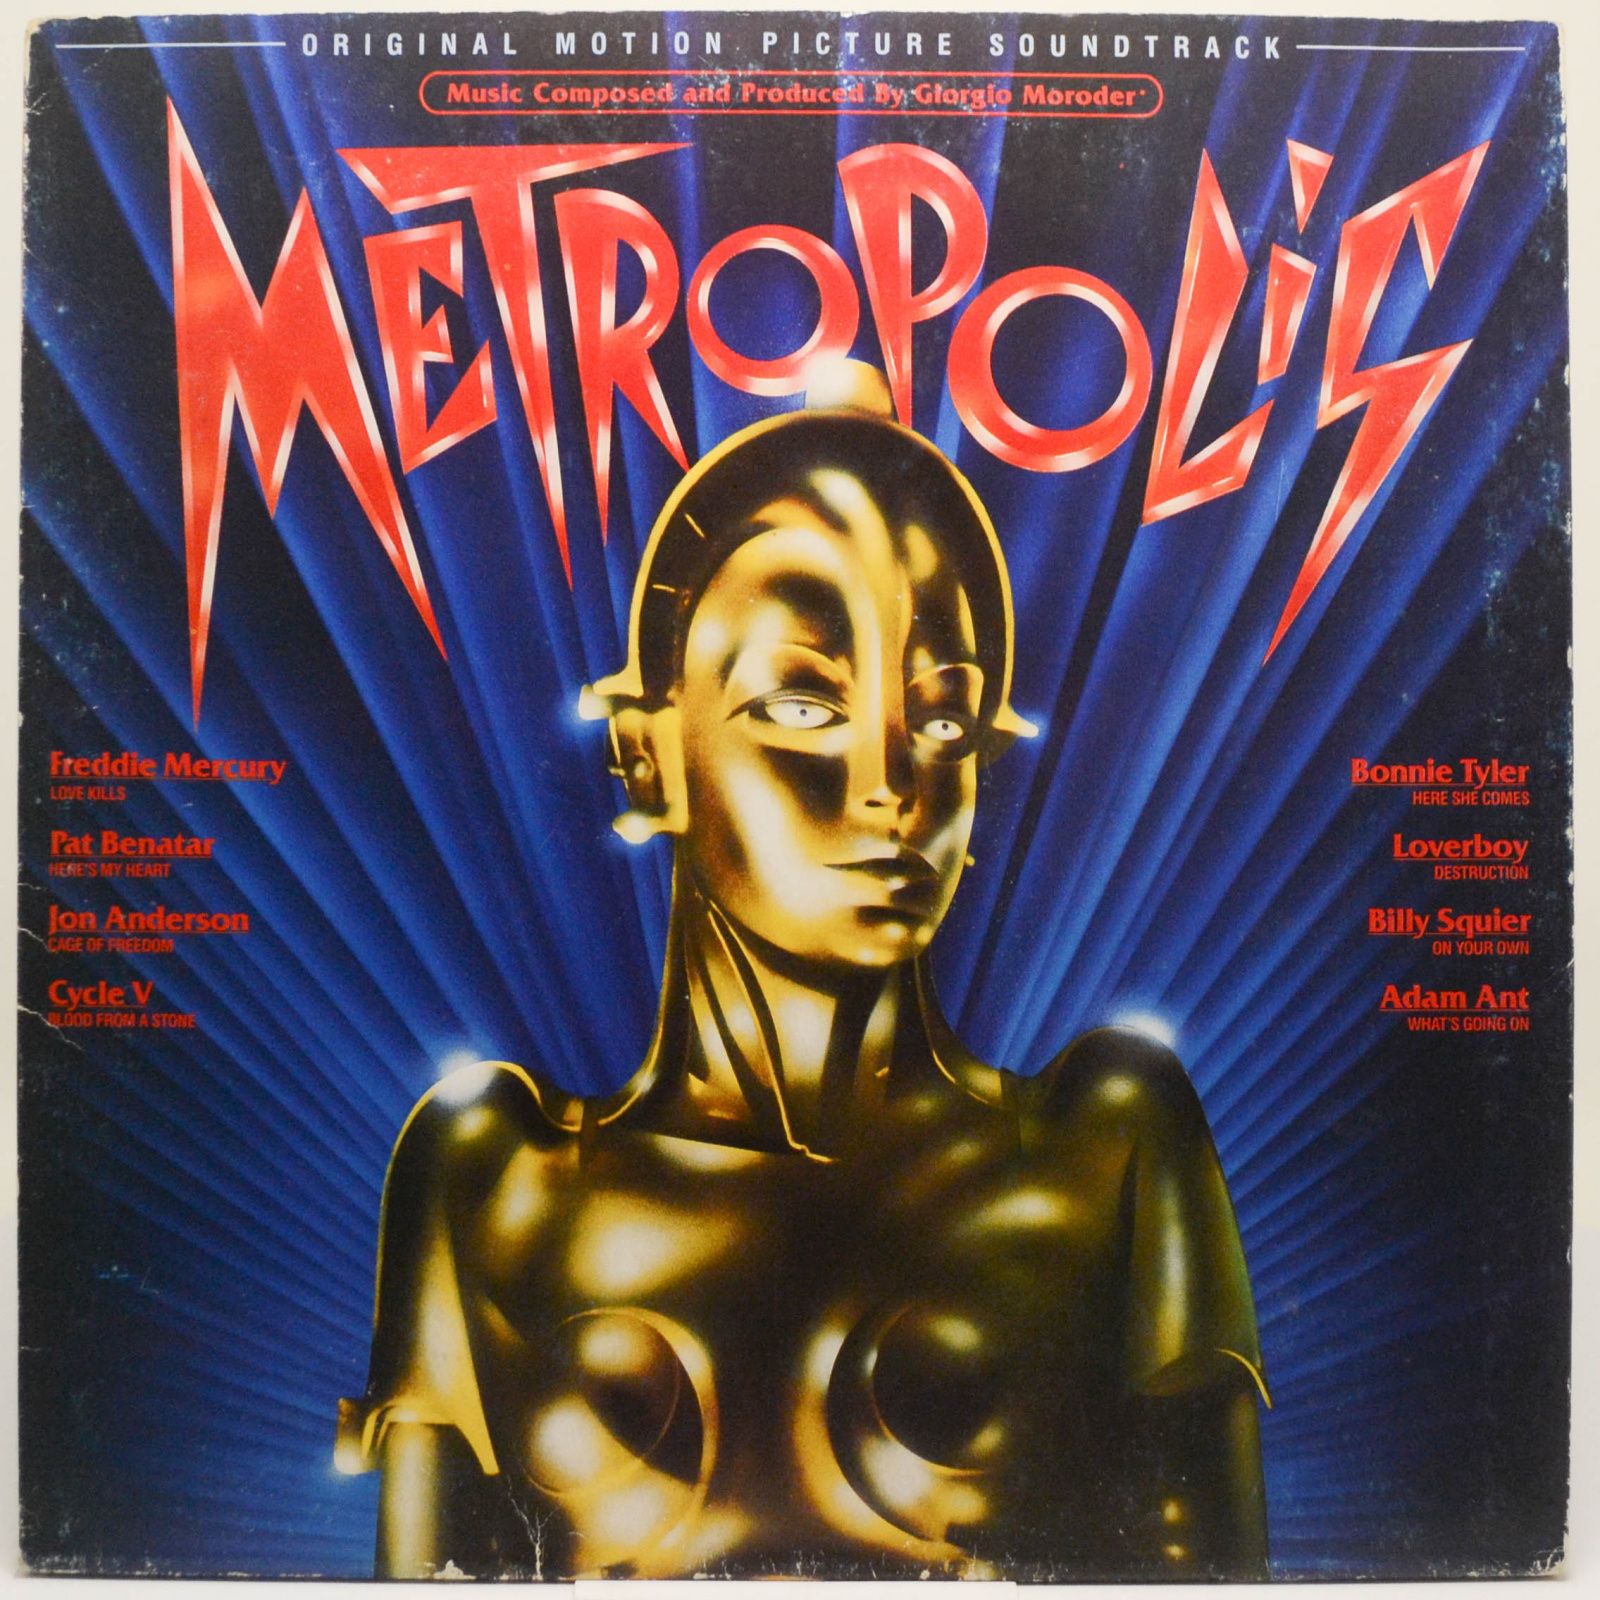 Various — Metropolis (Original Motion Picture Soundtrack), 1984